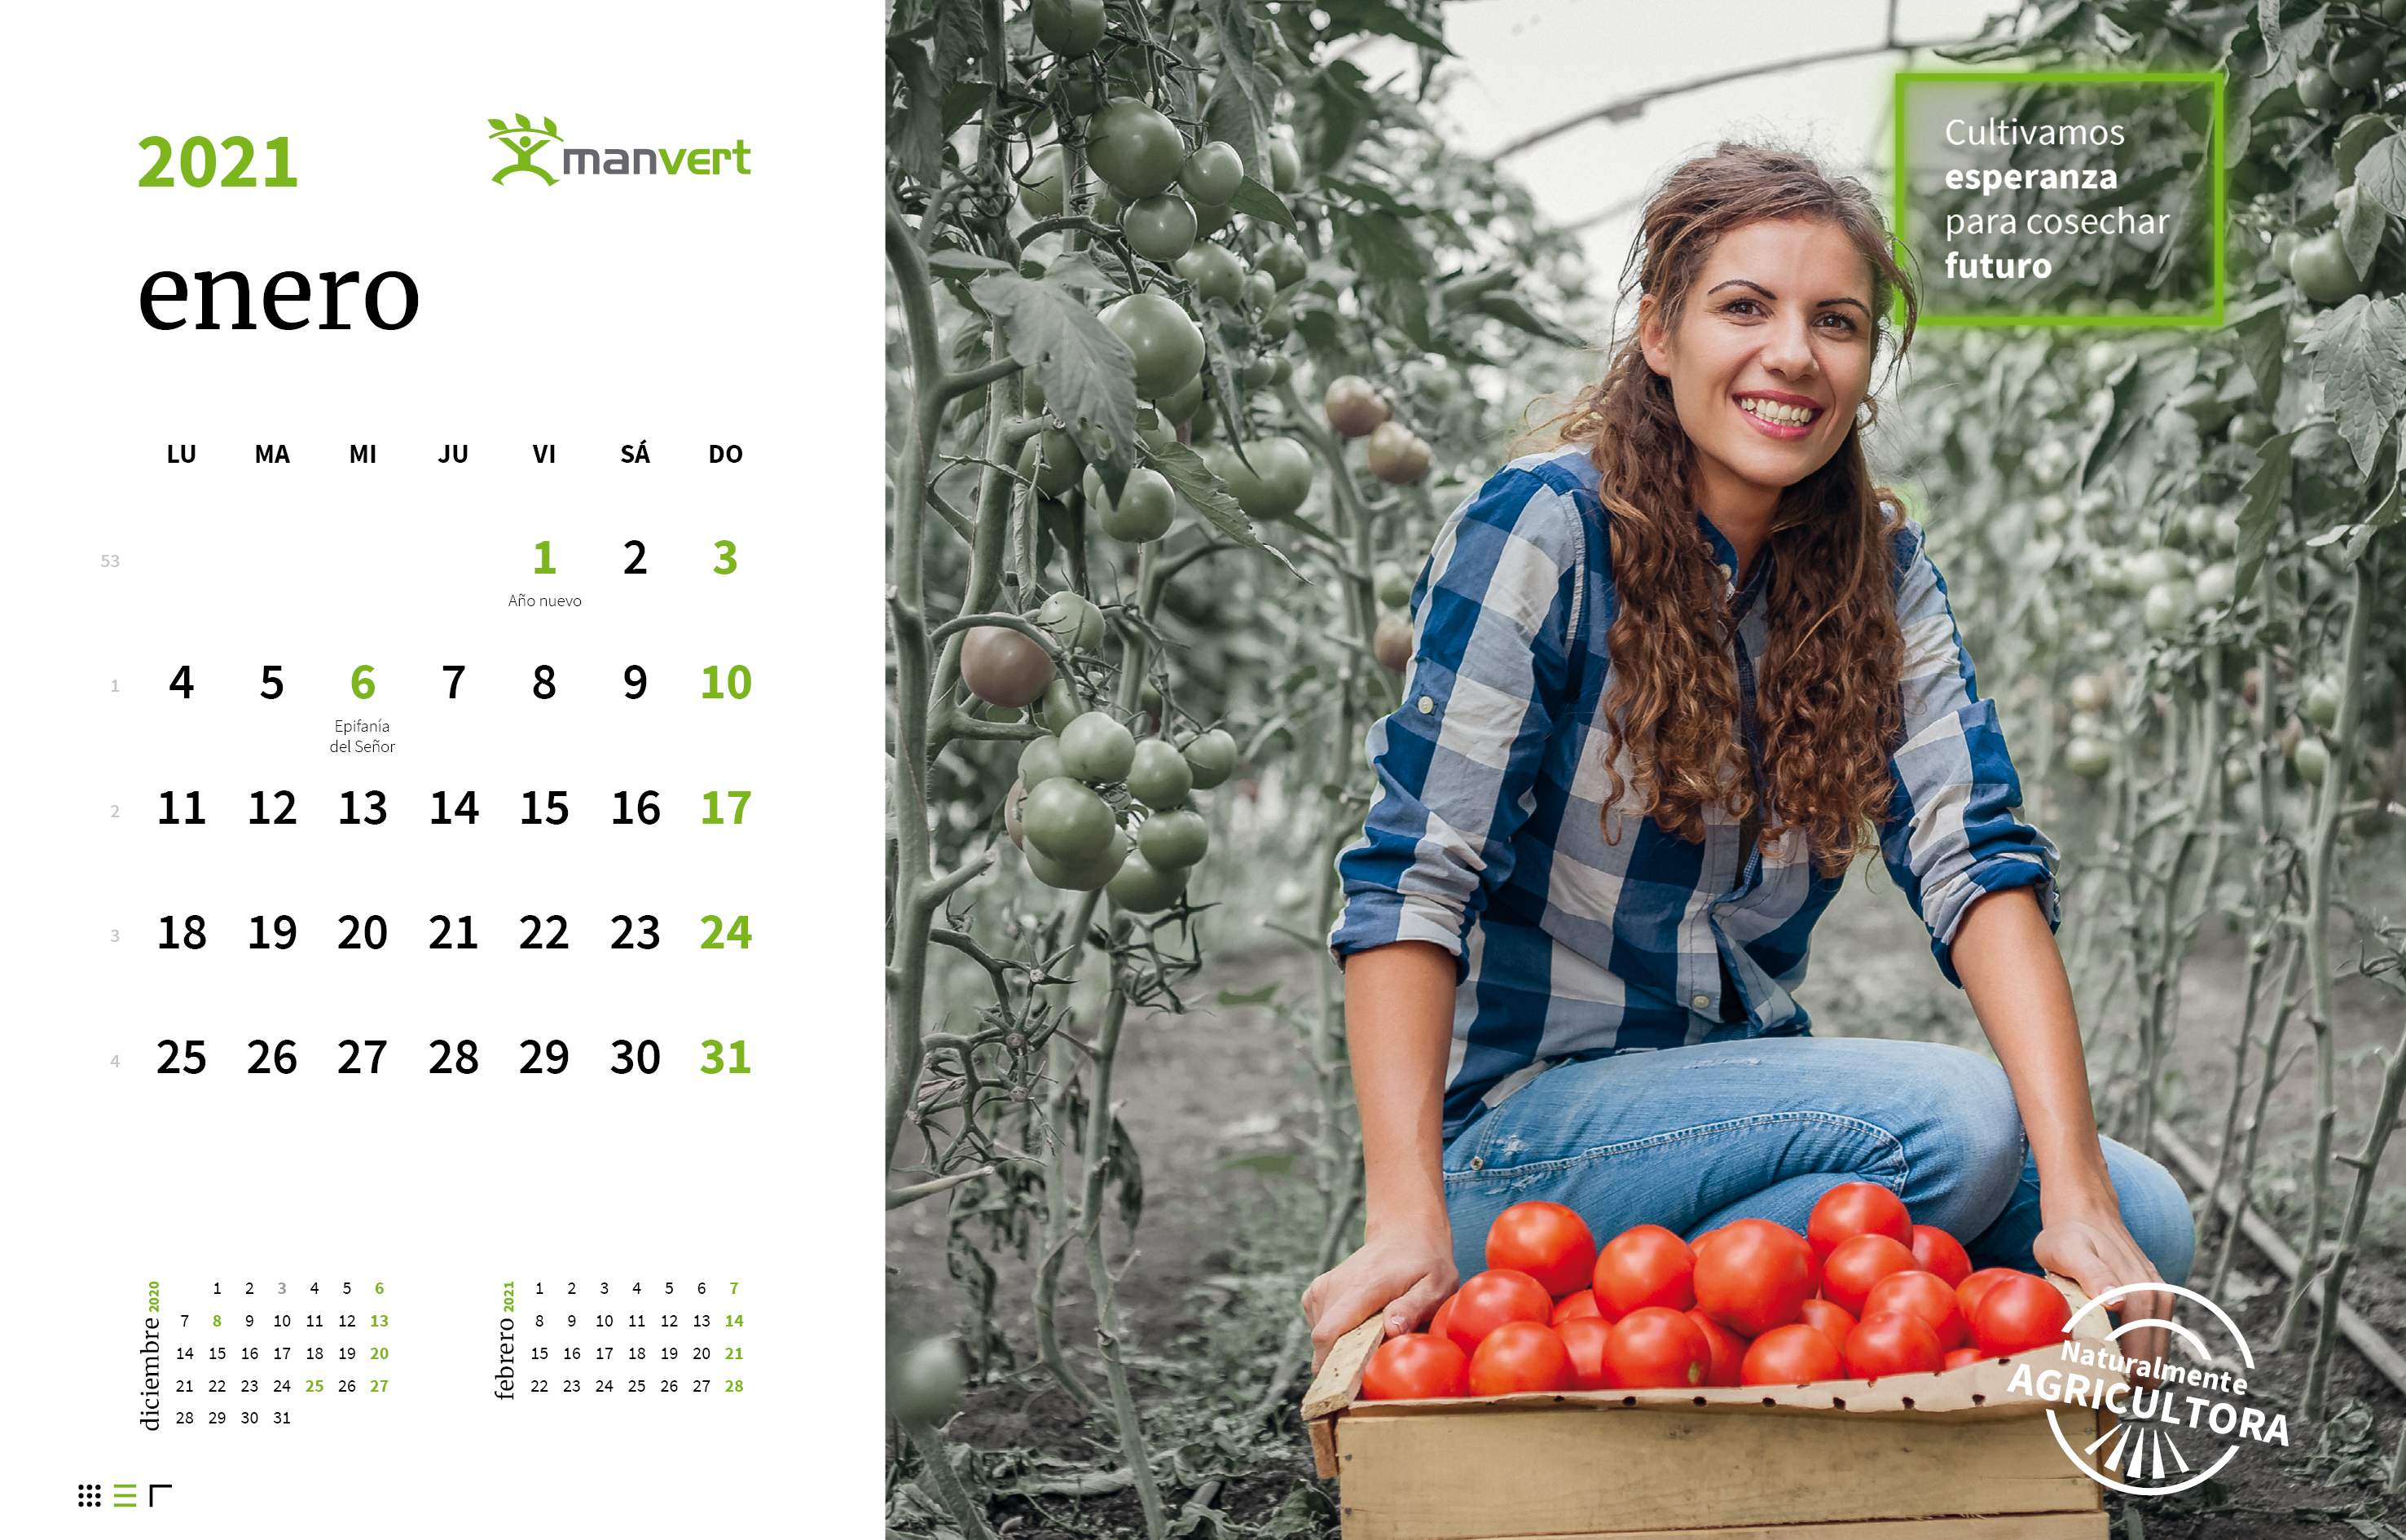 manvert lanza una campaña para valorar el trabajo de los agricultores de todo el mundo